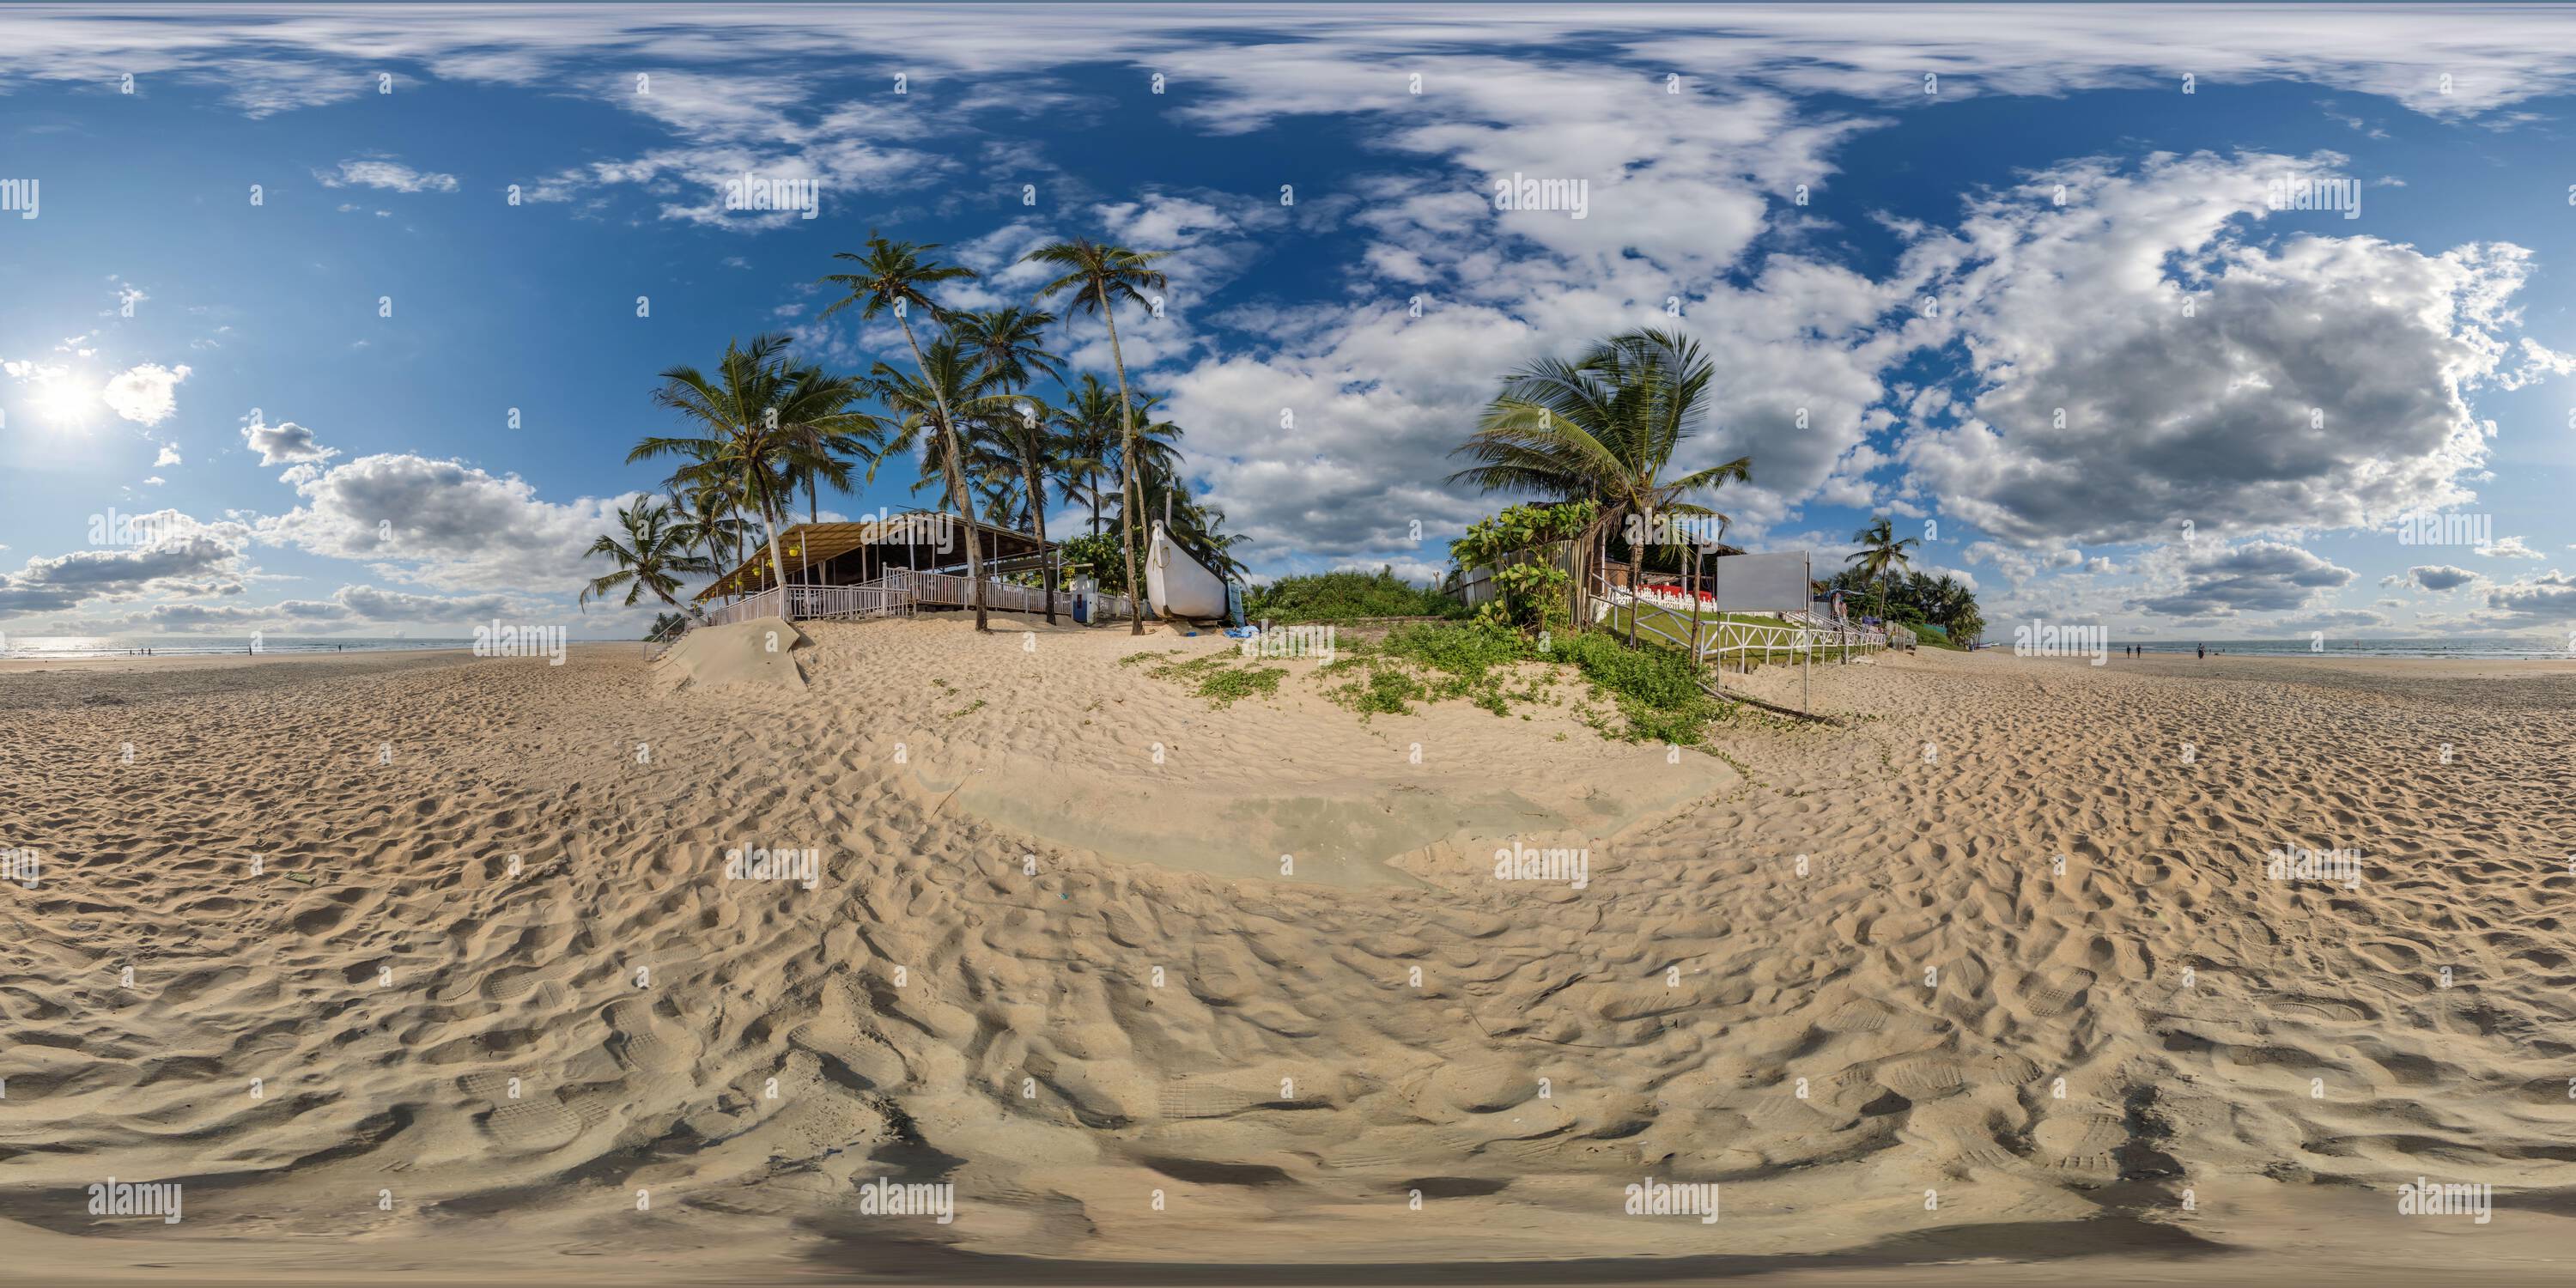 Vue panoramique à 360° de 360 hdri panorama avec des cocotiers sur la côte de l'océan près de la cabane tropicale ou le café de cabane en plein air sur la plage dans des projecti sphériques sans soudure équirectangulaires